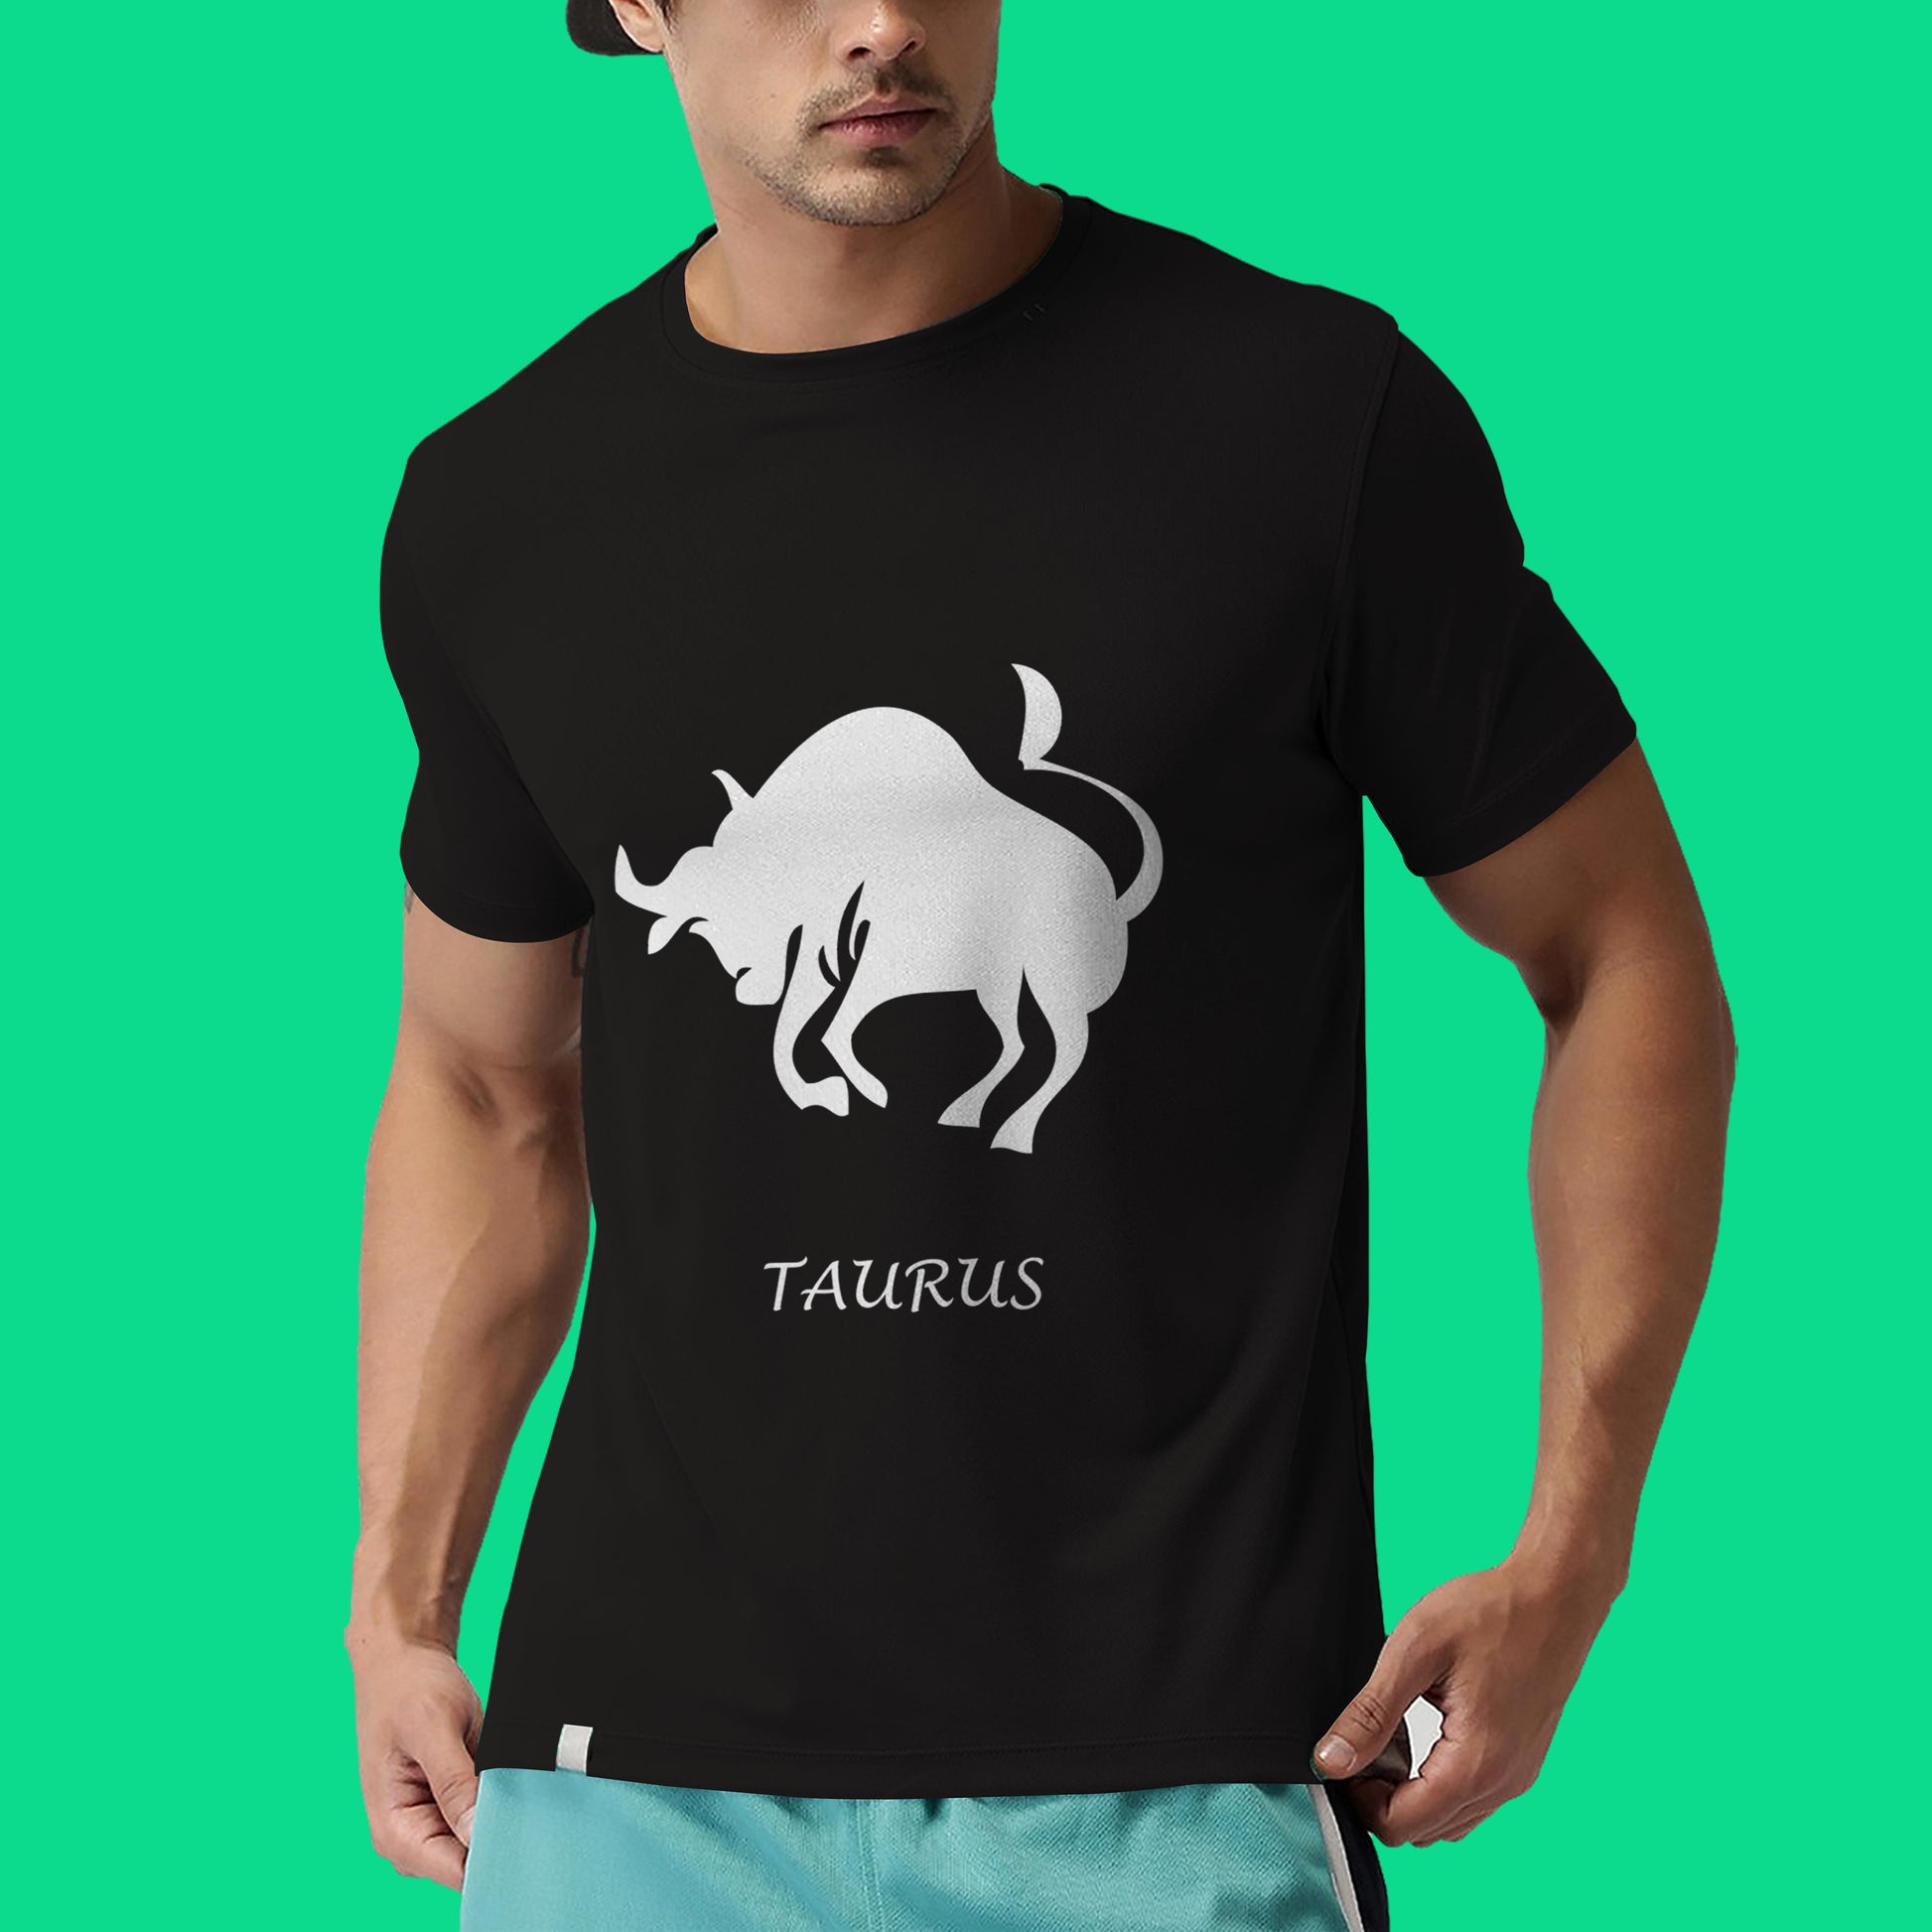 Taurus zodiac sign tshirt, Personality tshirt, Astrology tshirt- Black